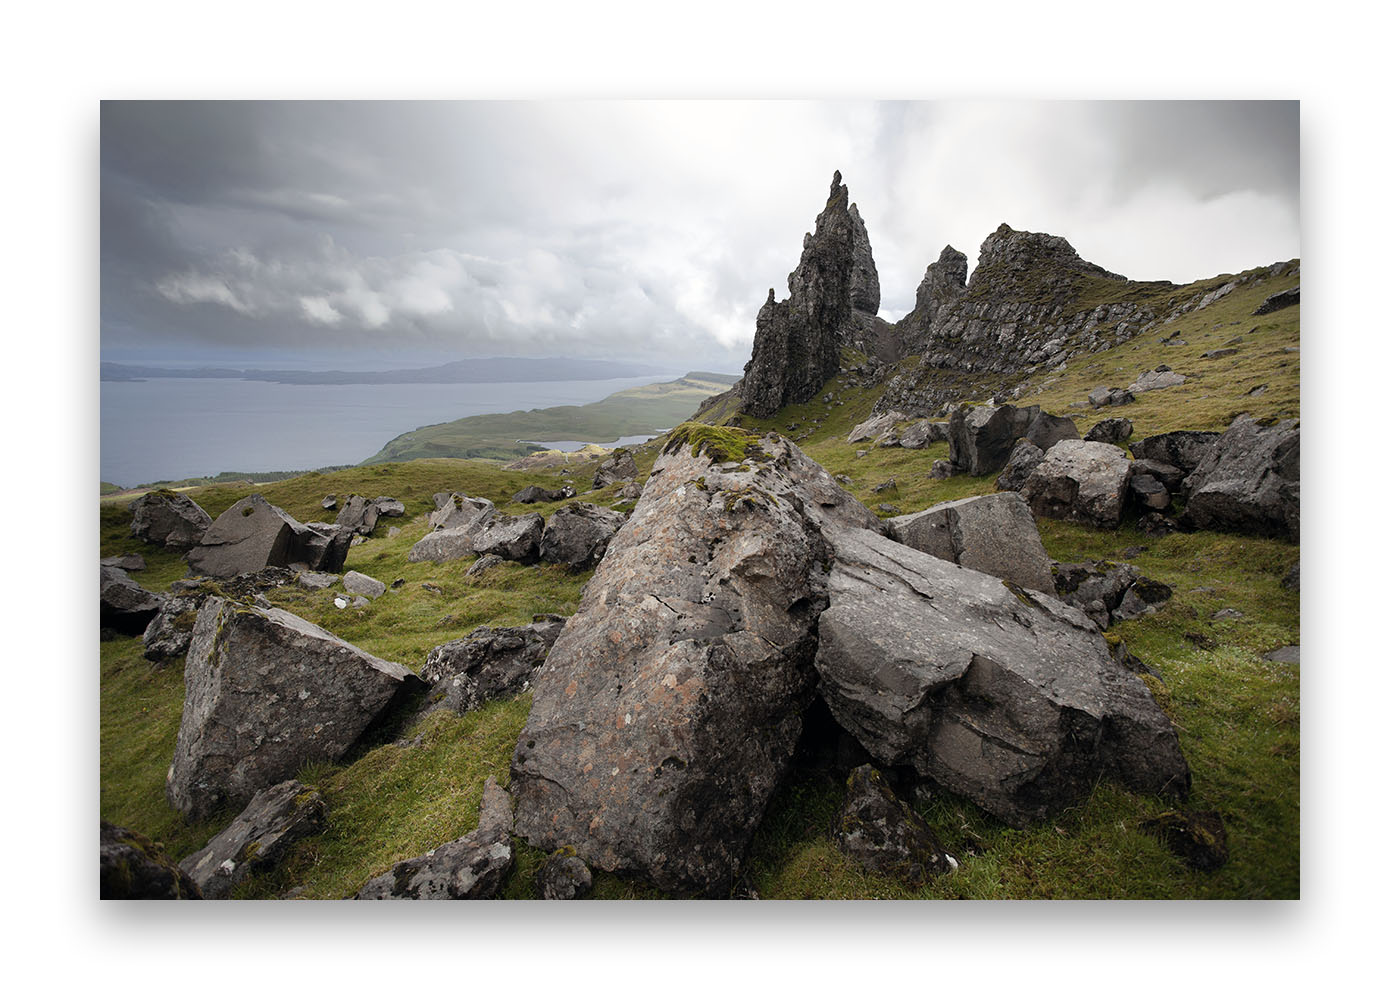 De beaux rochers en premier plan sur la lande écossaise  avec au loin un piton rocheux .